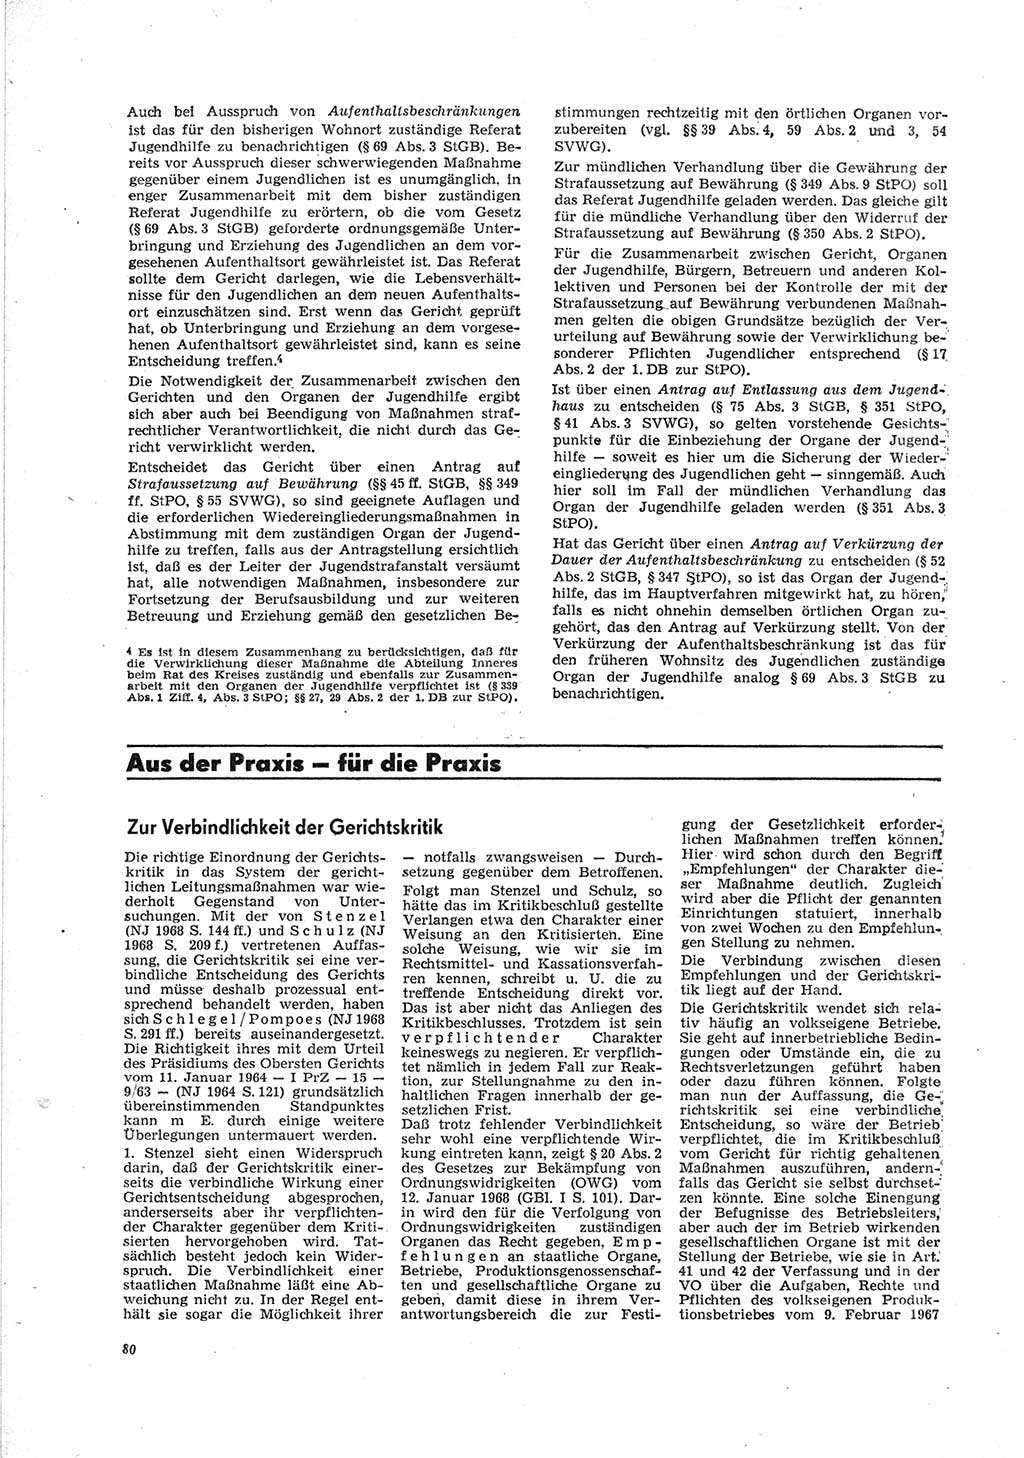 Neue Justiz (NJ), Zeitschrift für Recht und Rechtswissenschaft [Deutsche Demokratische Republik (DDR)], 23. Jahrgang 1969, Seite 80 (NJ DDR 1969, S. 80)